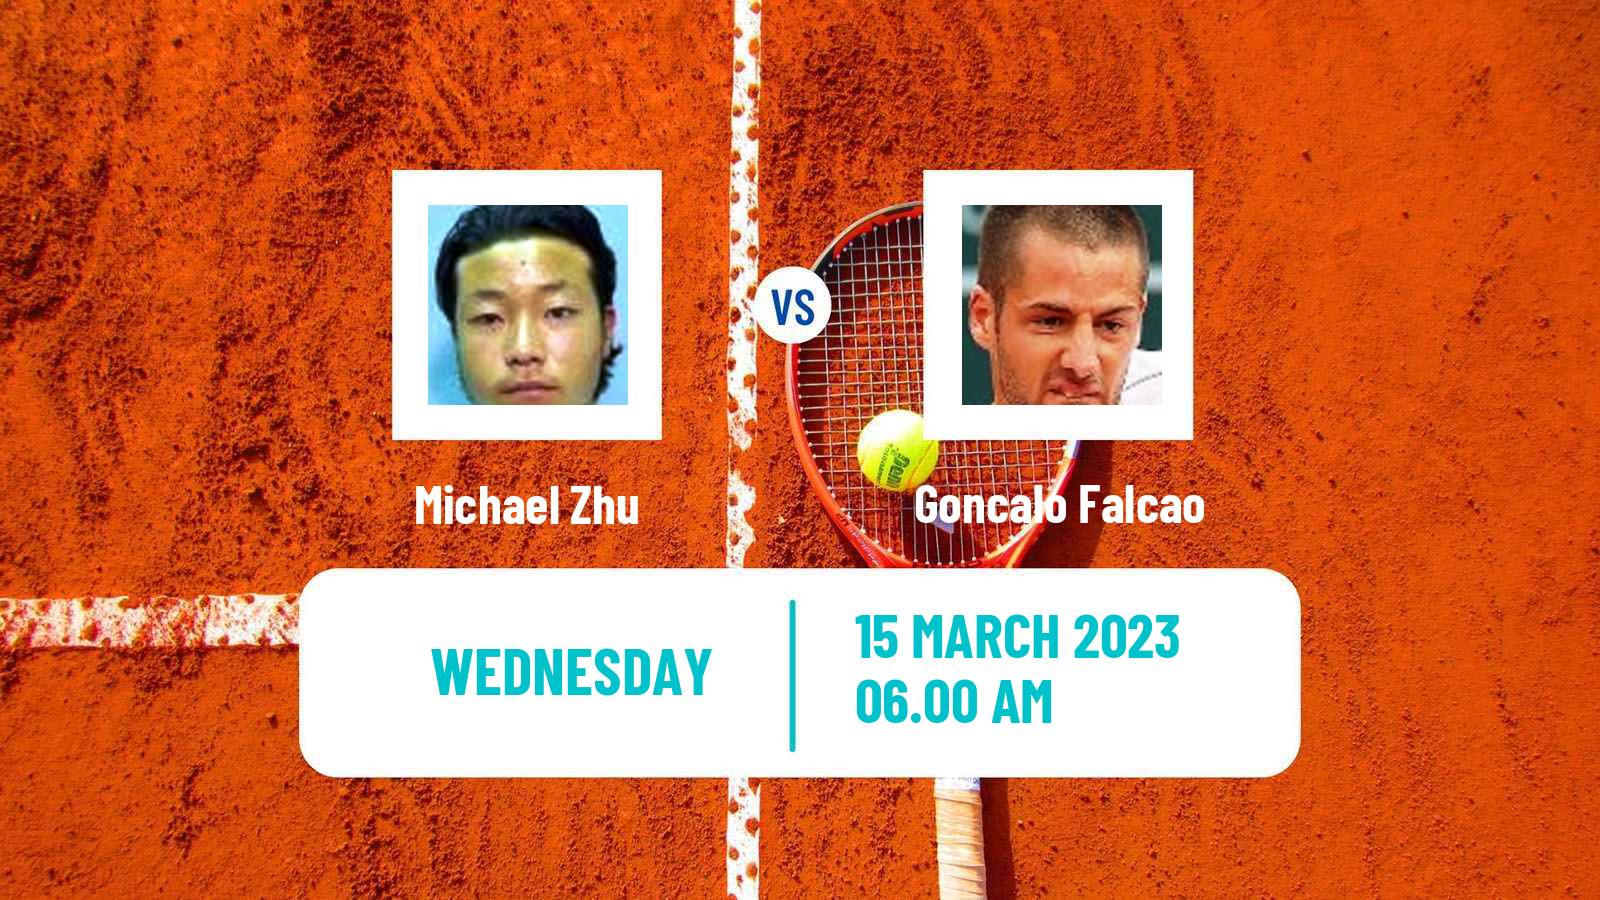 Tennis ITF Tournaments Michael Zhu - Goncalo Falcao